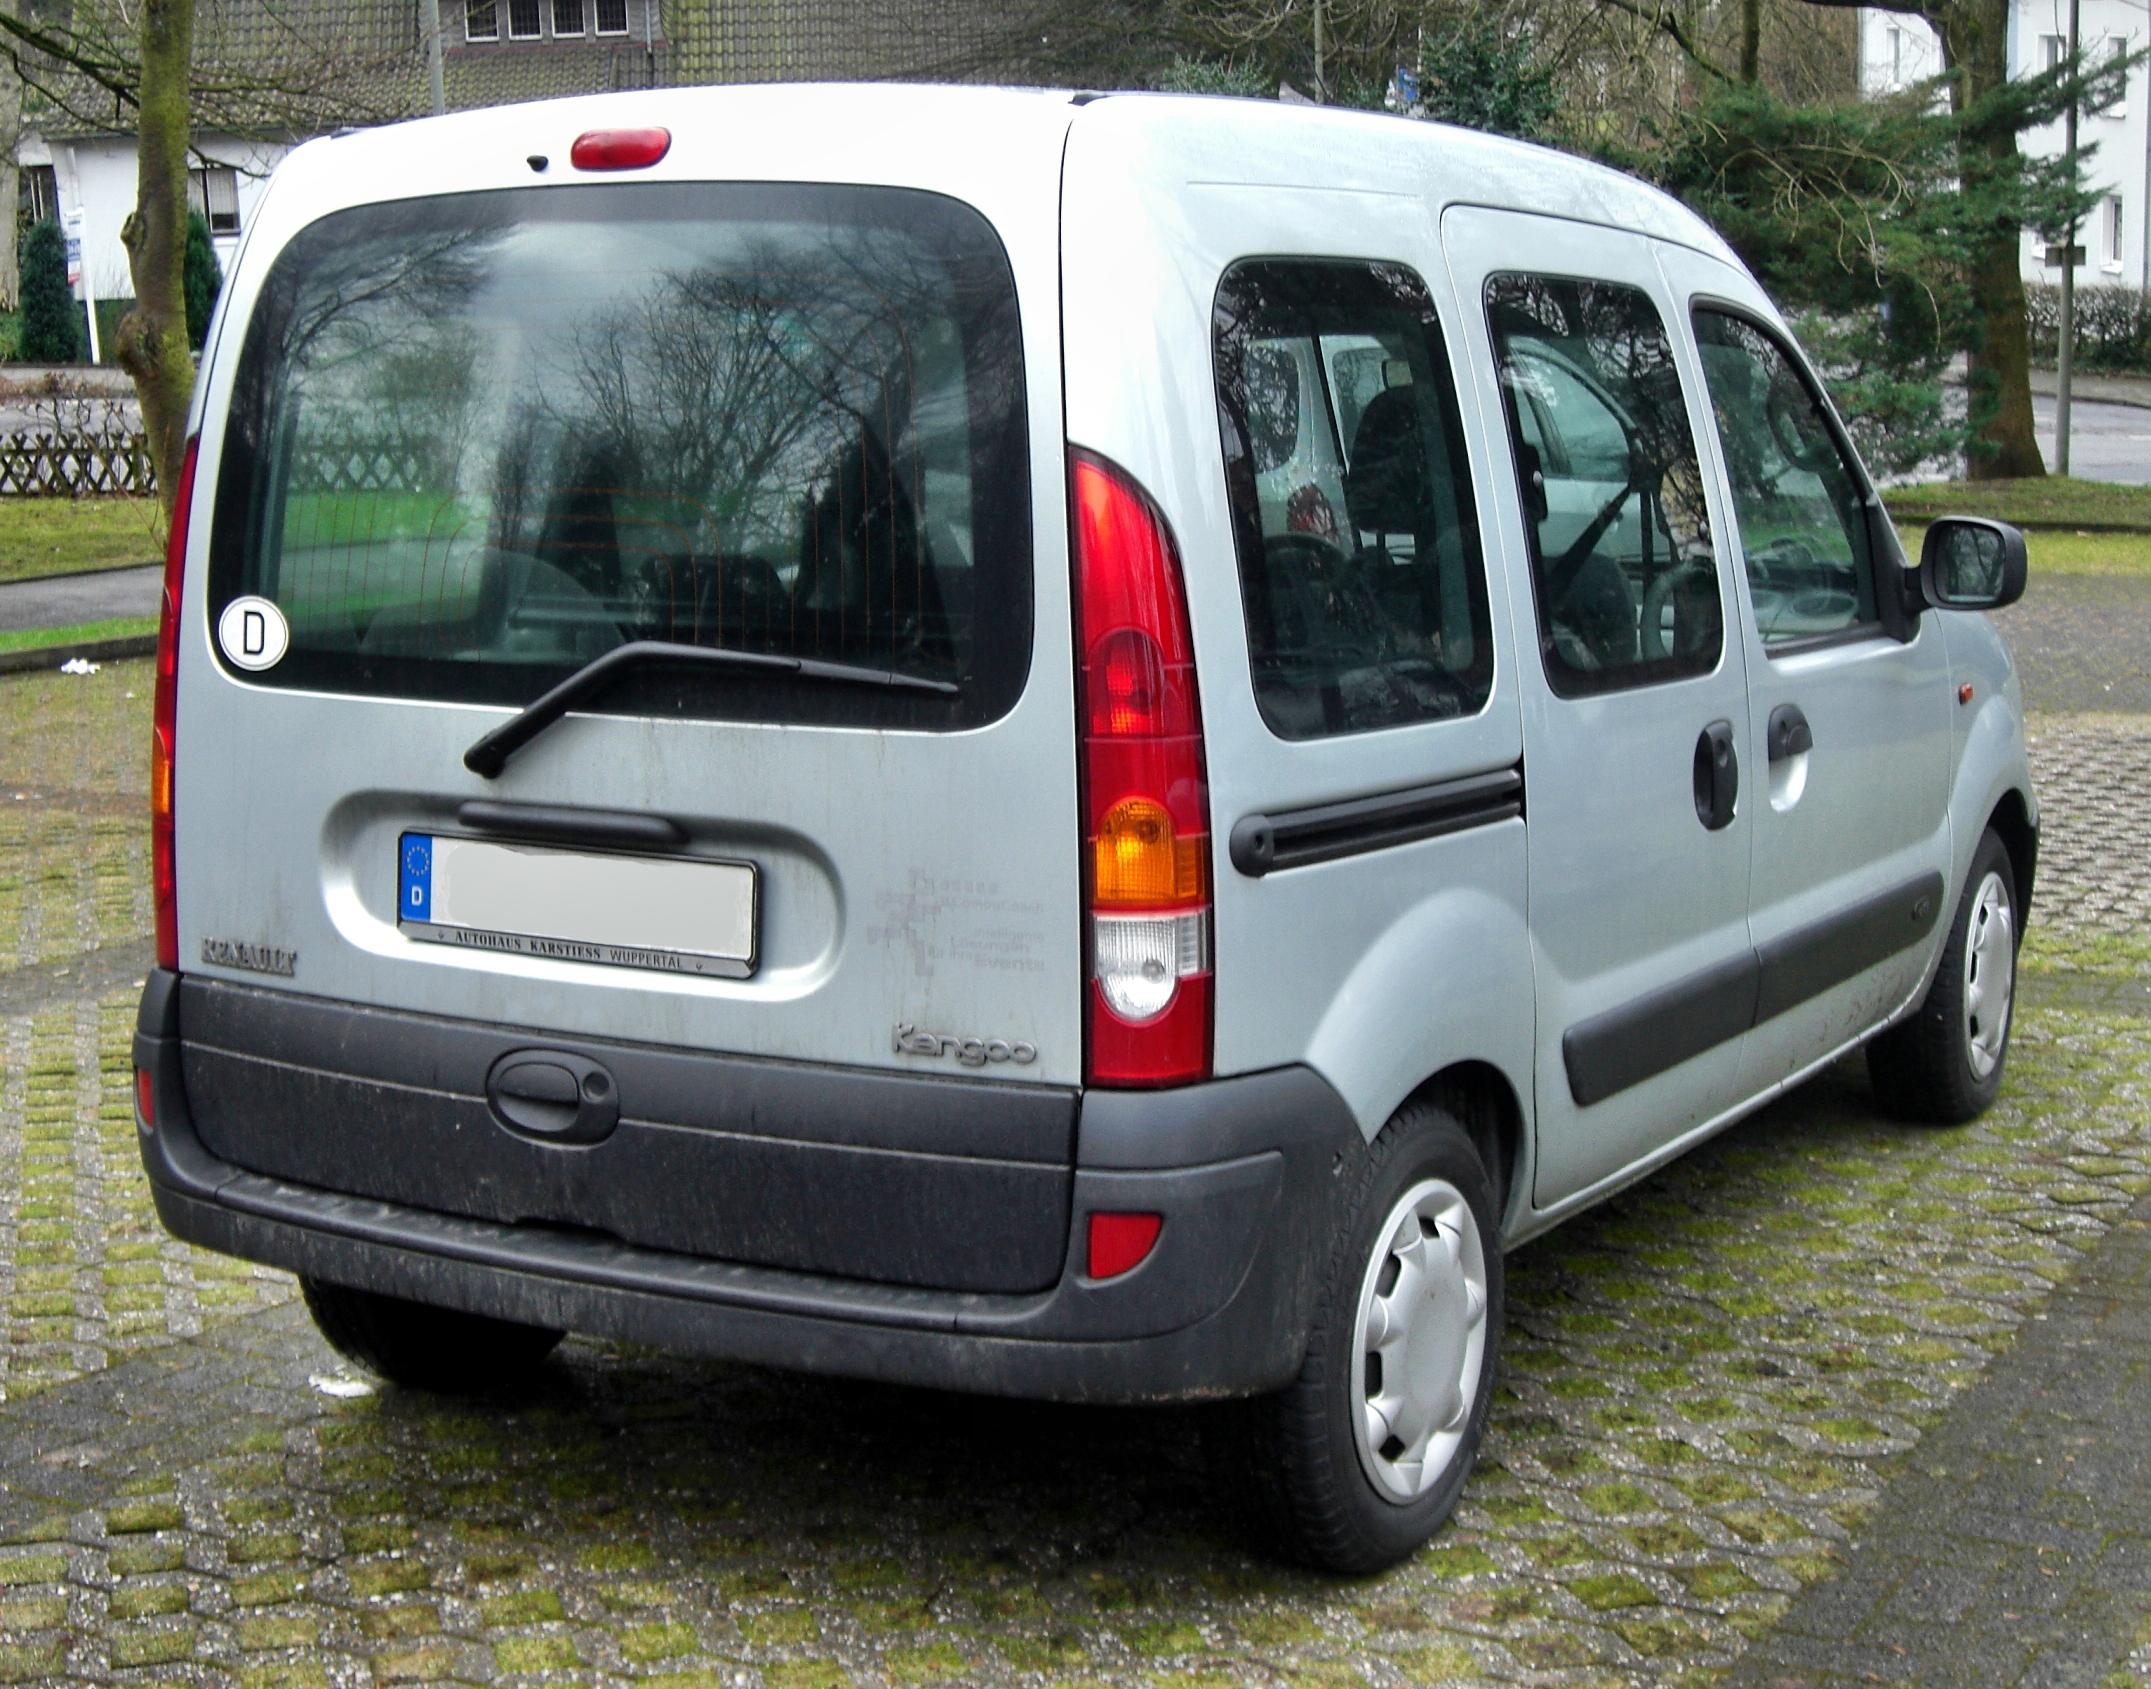 File:Renault Kangoo rear.JPG - Wikipedia